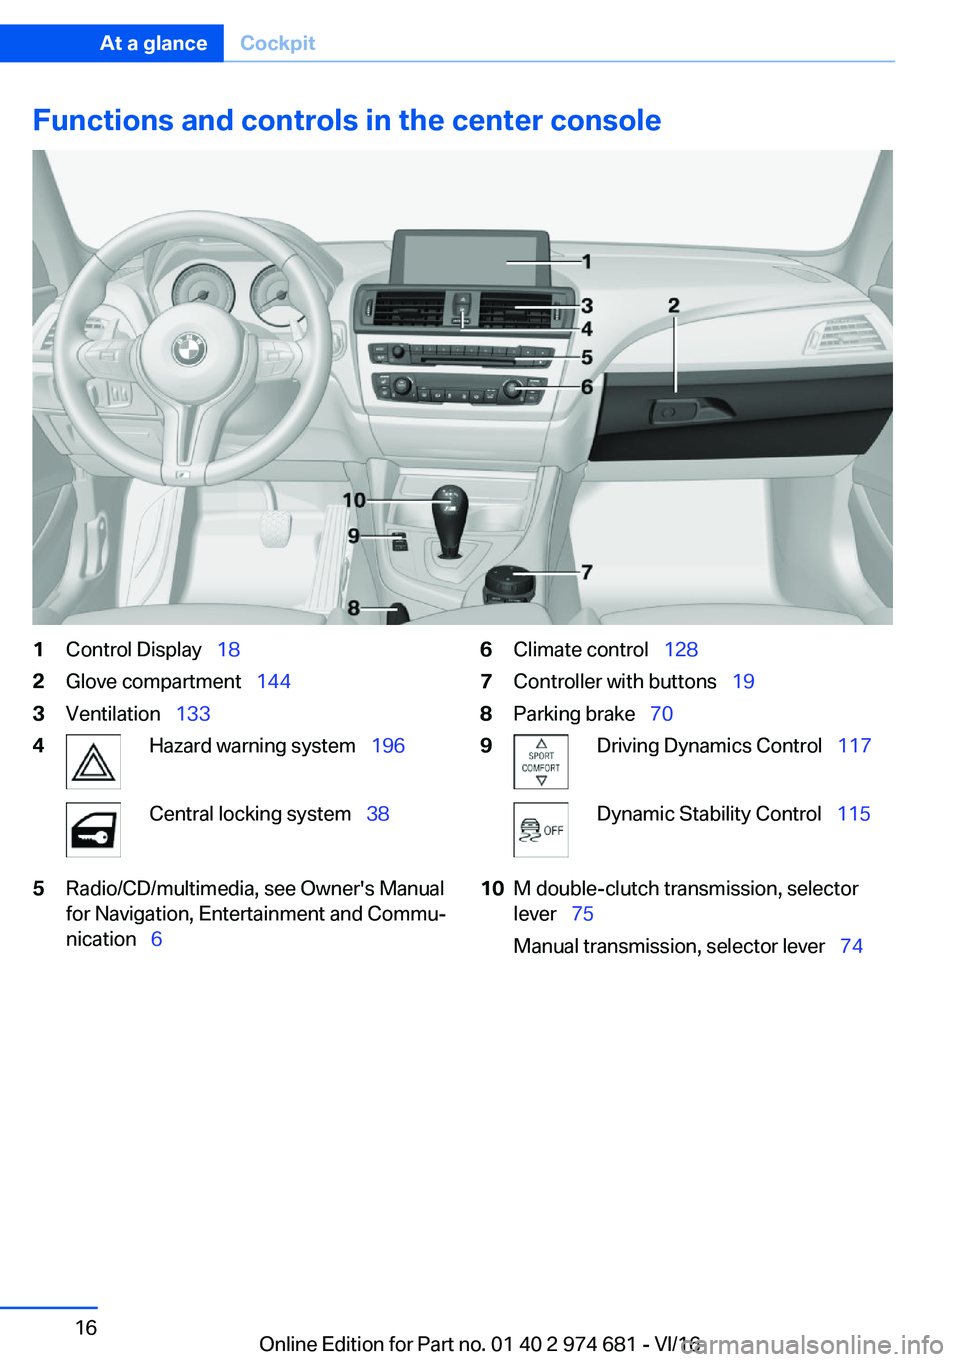 BMW M2 2017 User Guide �F�u�n�c�t�i�o�n�s��a�n�d��c�o�n�t�r�o�l�s��i�n��t�h�e��c�e�n�t�e�r��c�o�n�s�o�l�e�1�C�o�n�t�r�o�l� �D�i�s�p�l�a�y\_�1�8�2�G�l�o�v�e� �c�o�m�p�a�r�t�m�e�n�t\_ �1�4�4�3�V�e�n�t�i�l�a�t�i�o�n